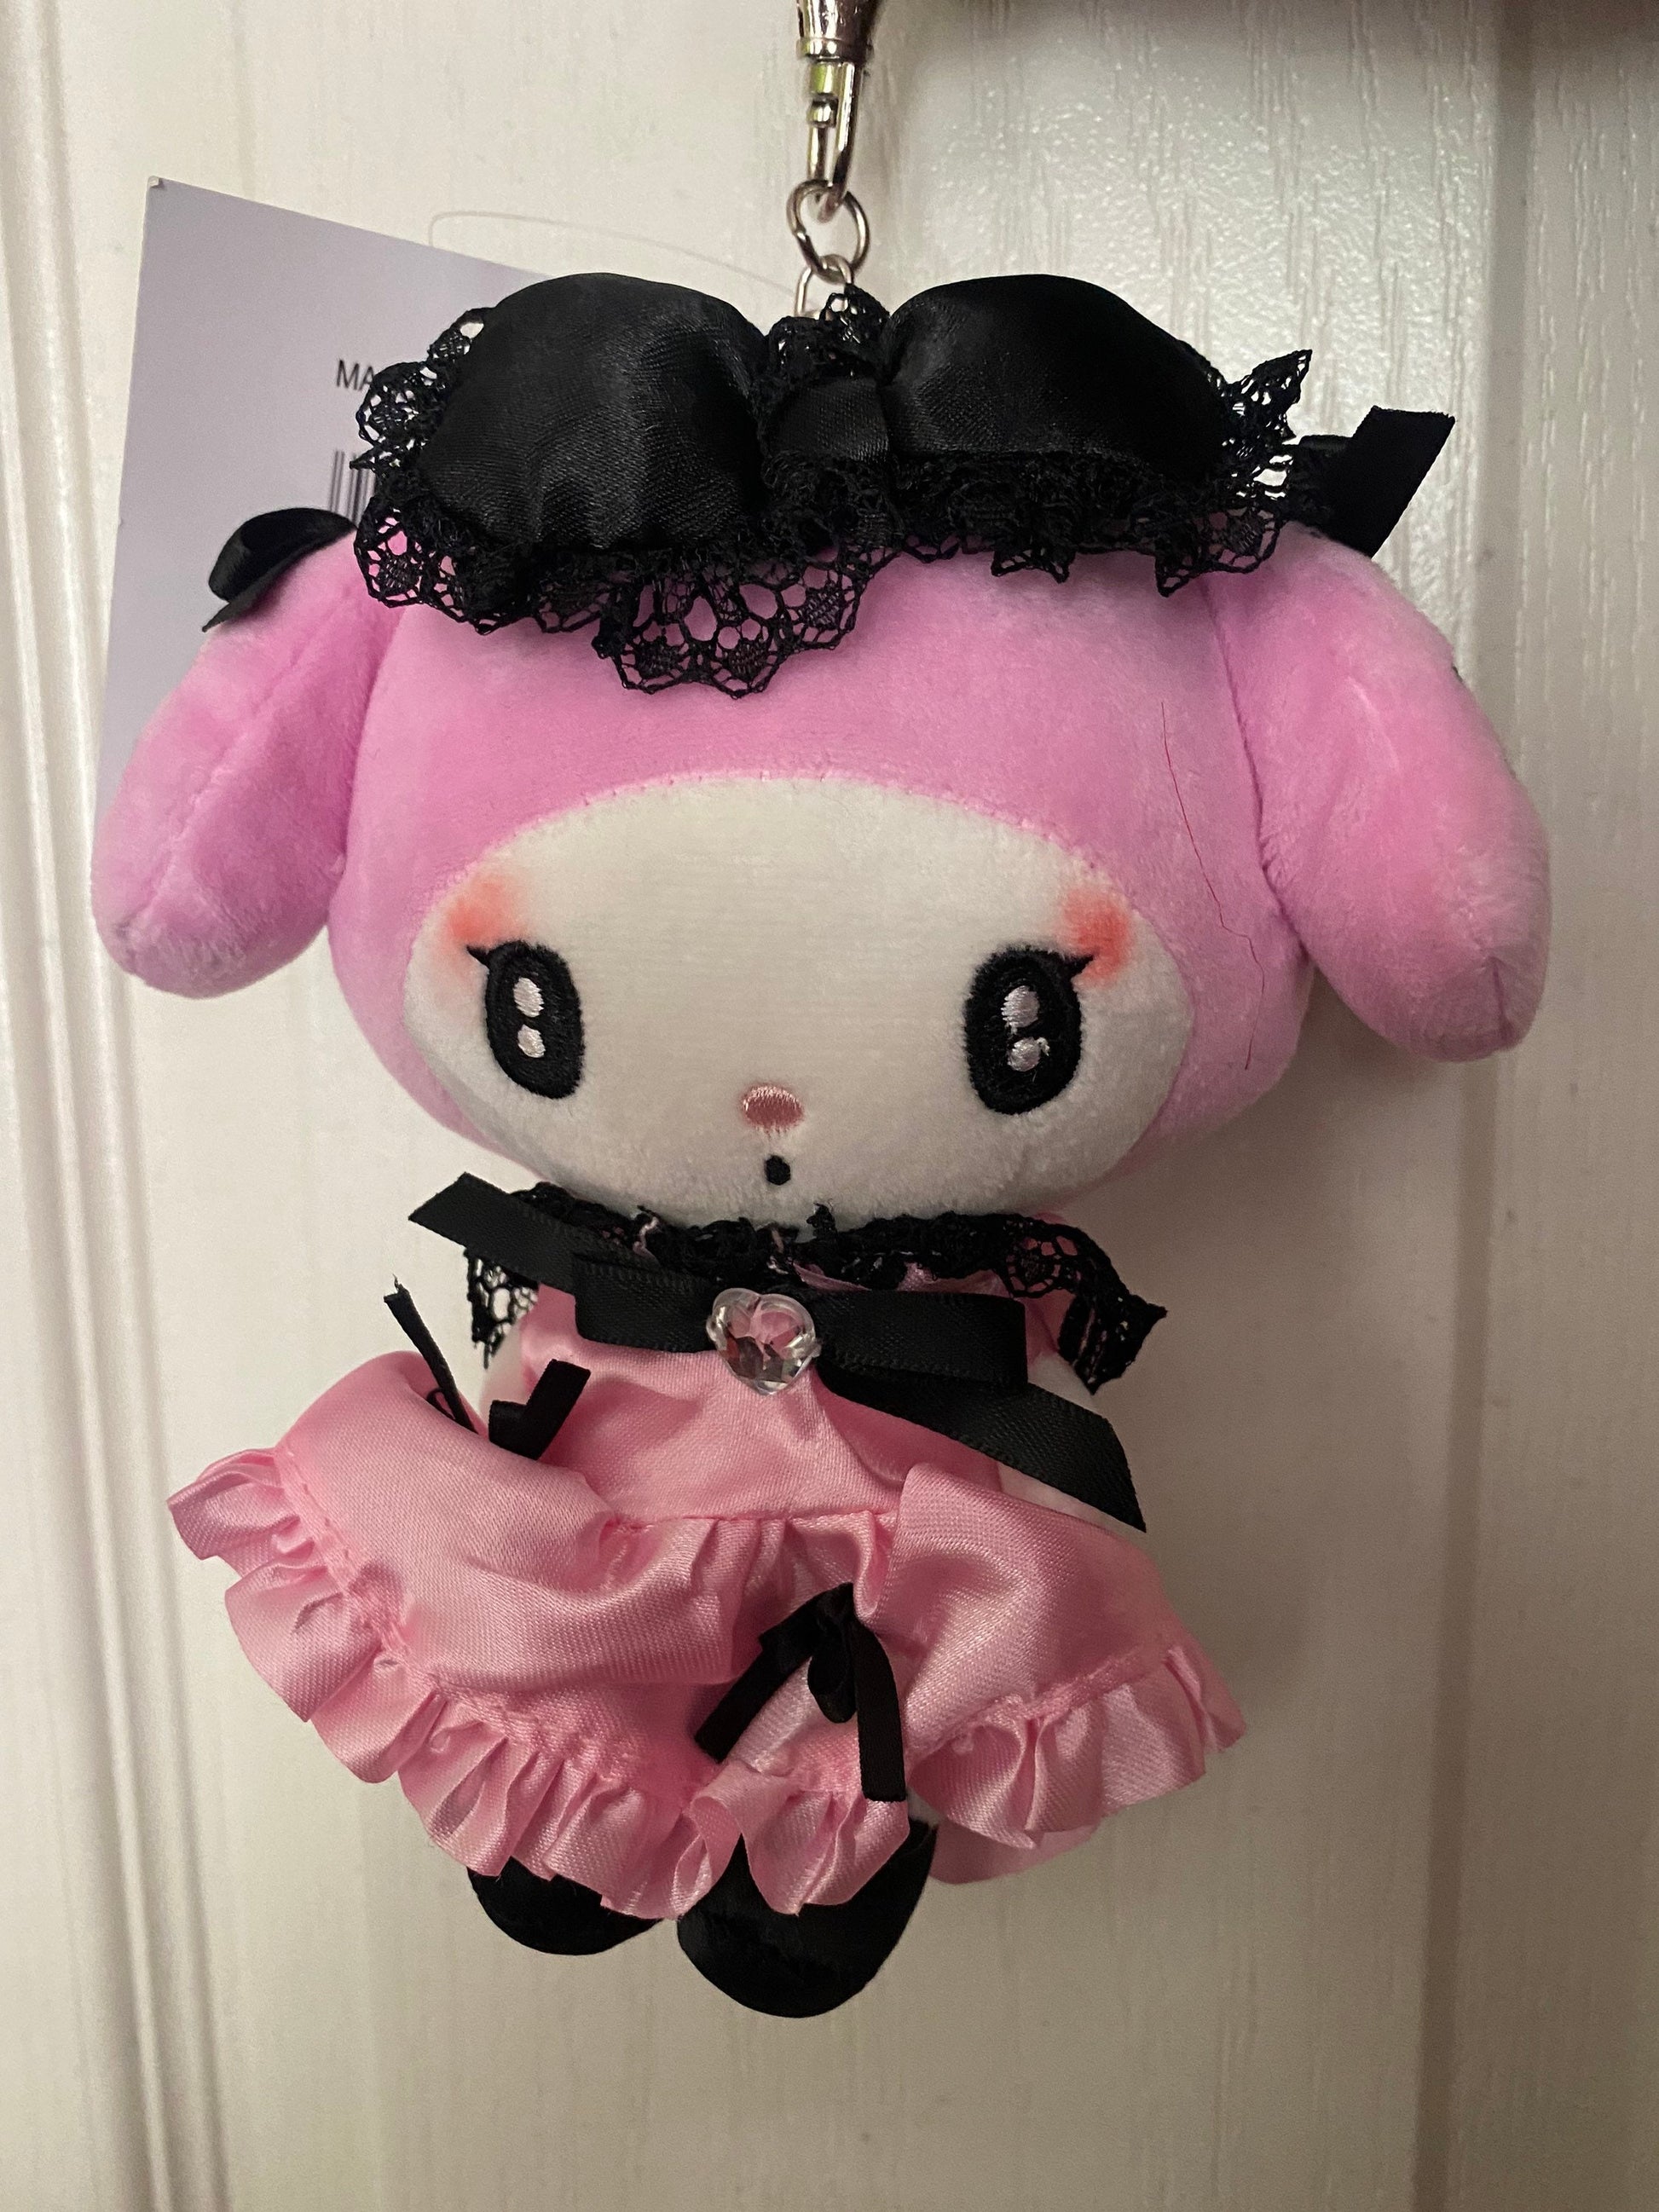 Melokuro Kuro /My Melody goth lace dolls